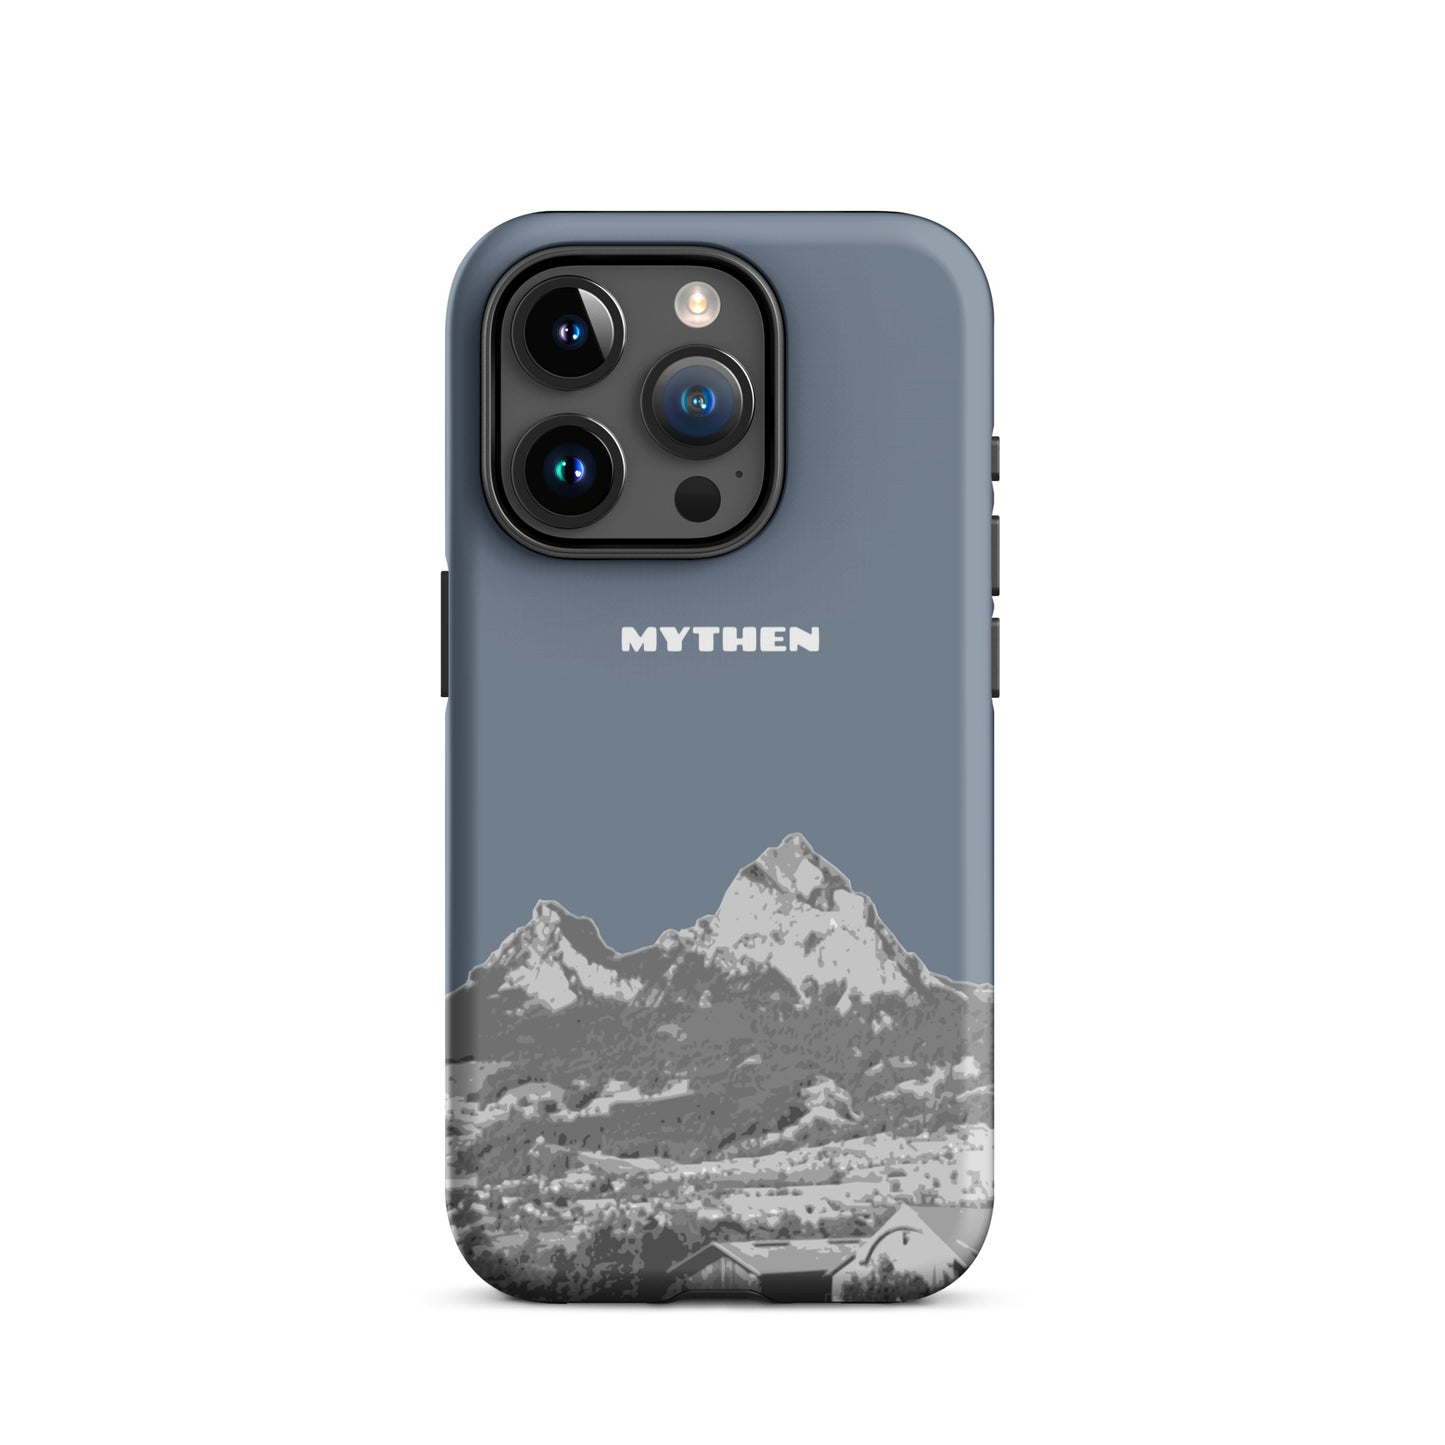 Hülle für das iPhone 15 Pro von Apple in der Farbe Schiefergrau, die den Grossen Mythen und den Kleinen Mythen bei Schwyz zeigt. 